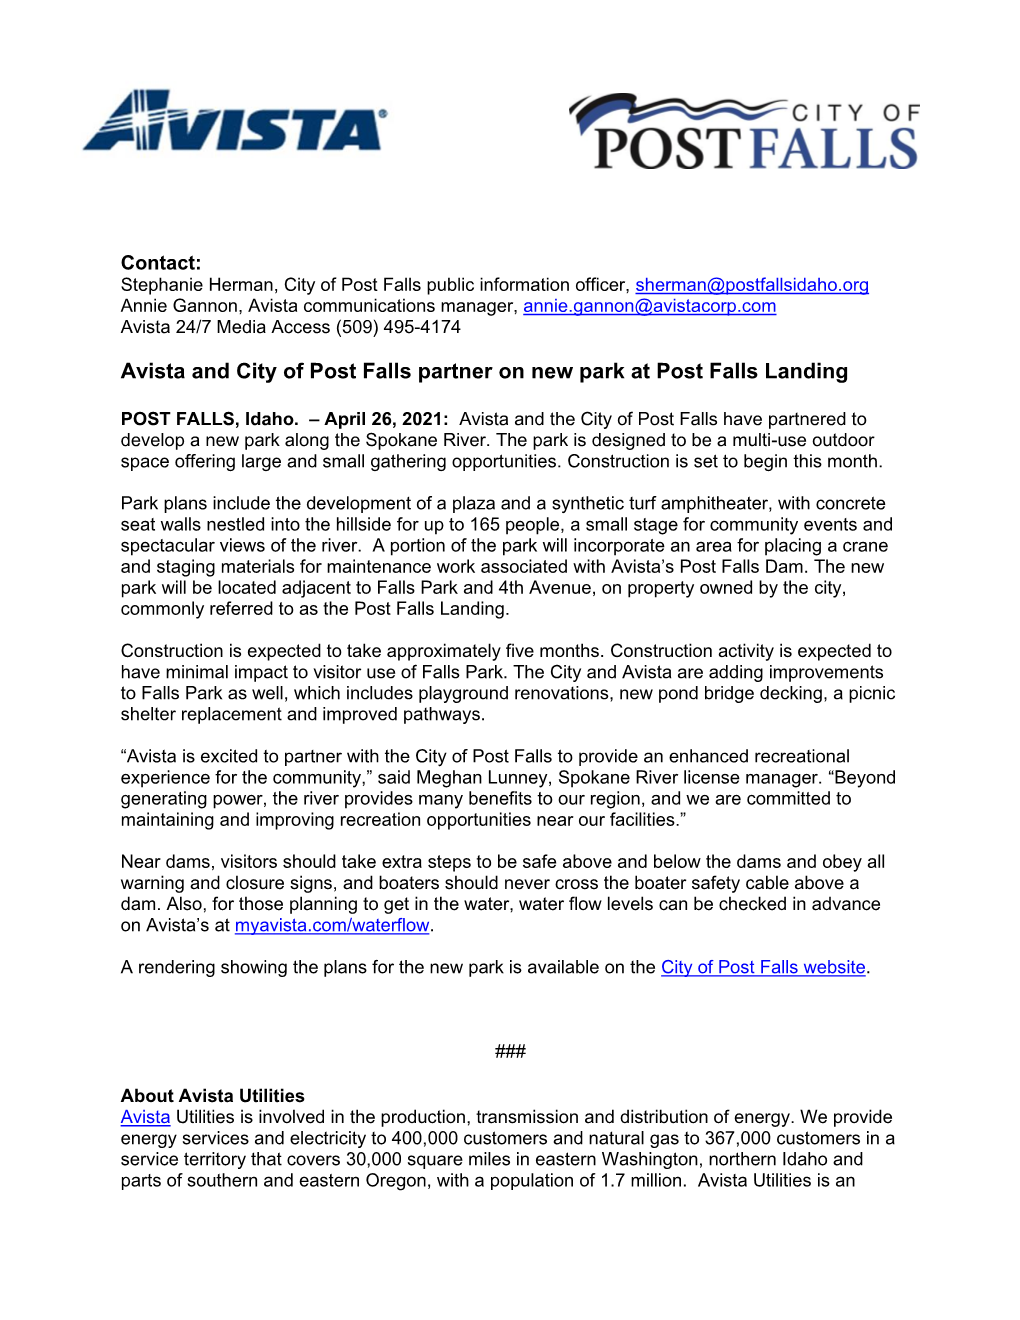 Avista and City of Post Falls Partner on New Park at Post Falls Landing